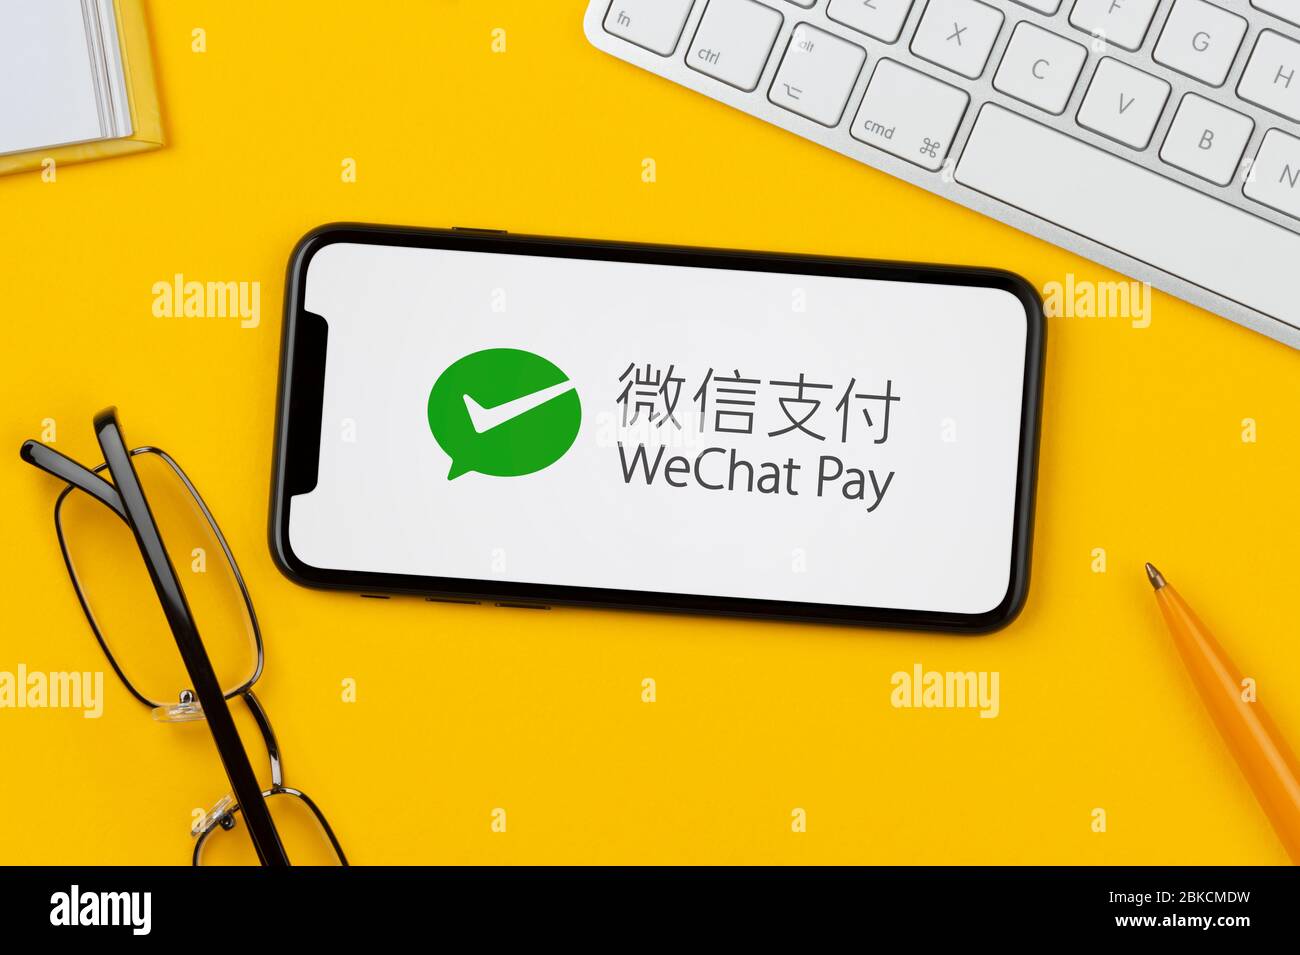 Ein Smartphone mit dem WeChat Pay-Logo liegt auf einem gelben Hintergrund zusammen mit Tastatur, Brille, Stift und Buch (nur für redaktionelle Verwendung). Stockfoto